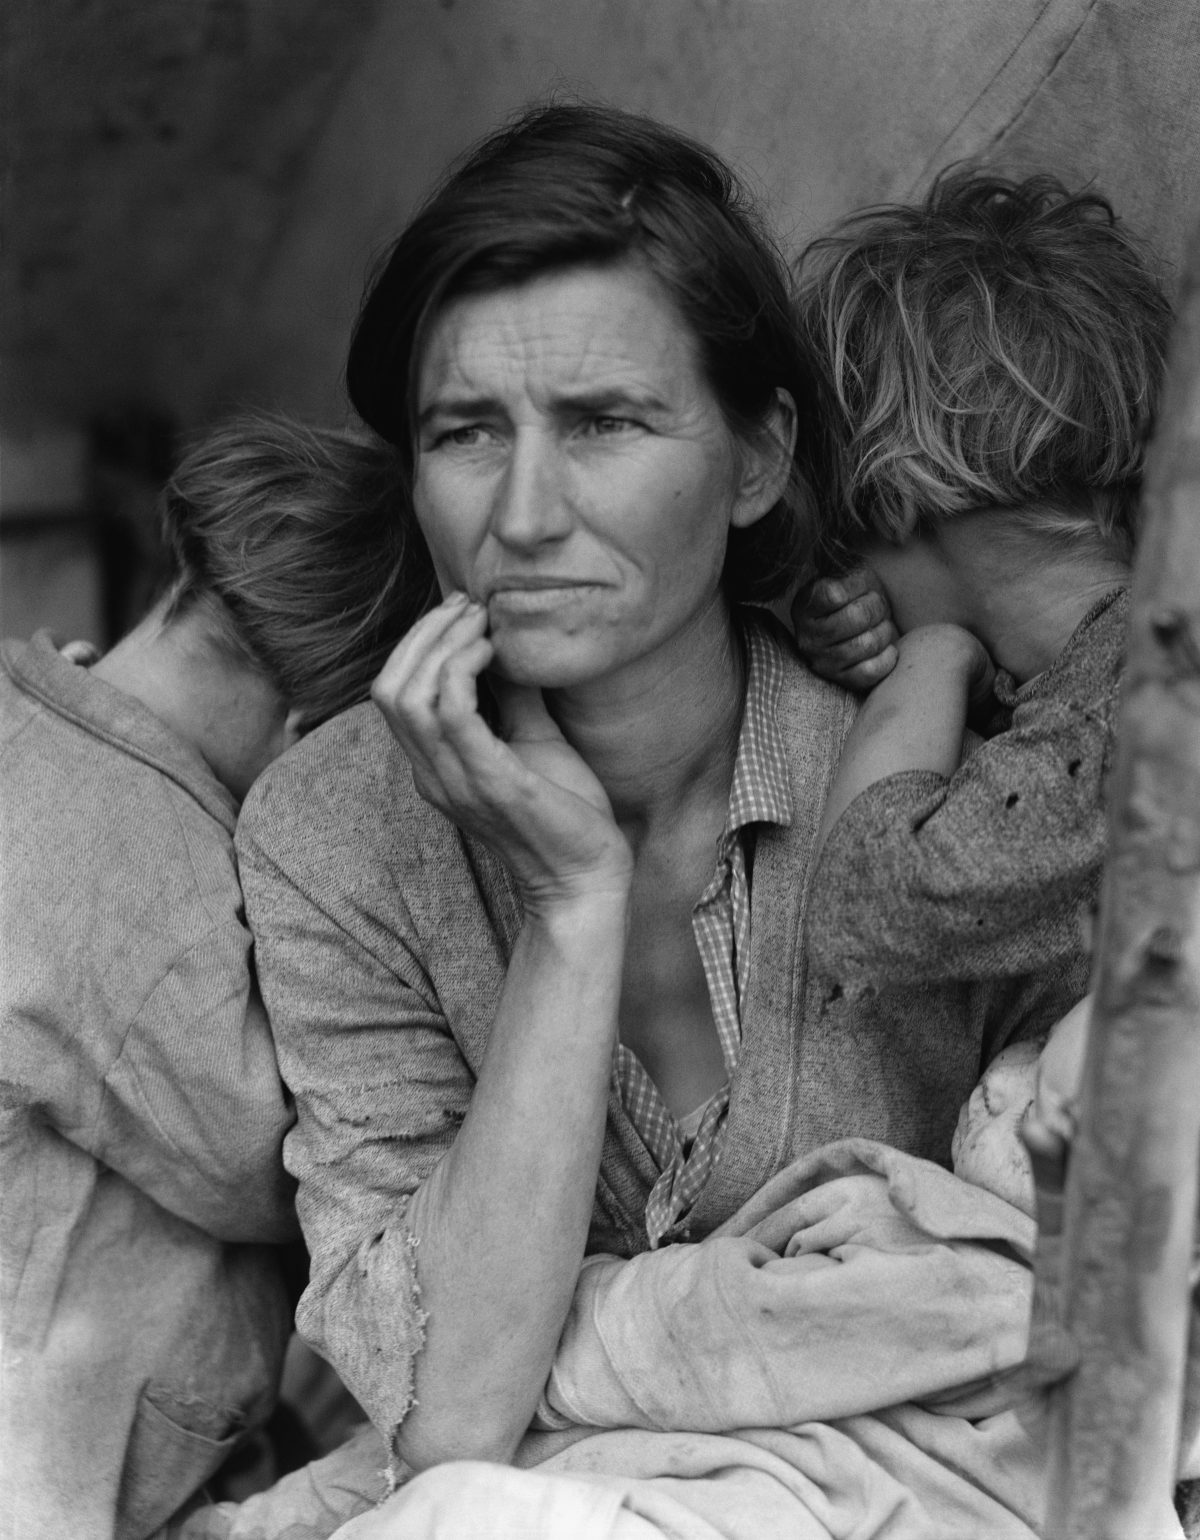 Fotografie Dorothey Lange z 24. října 1929, kdy se USA rozhostila panika kvůli náhlému kolapsu na burze. Ten den vešel do dějin jako Černý pátek a předznamenal globální ekonomický kolaps. Foto Public Domain Image By Dorothea Lange